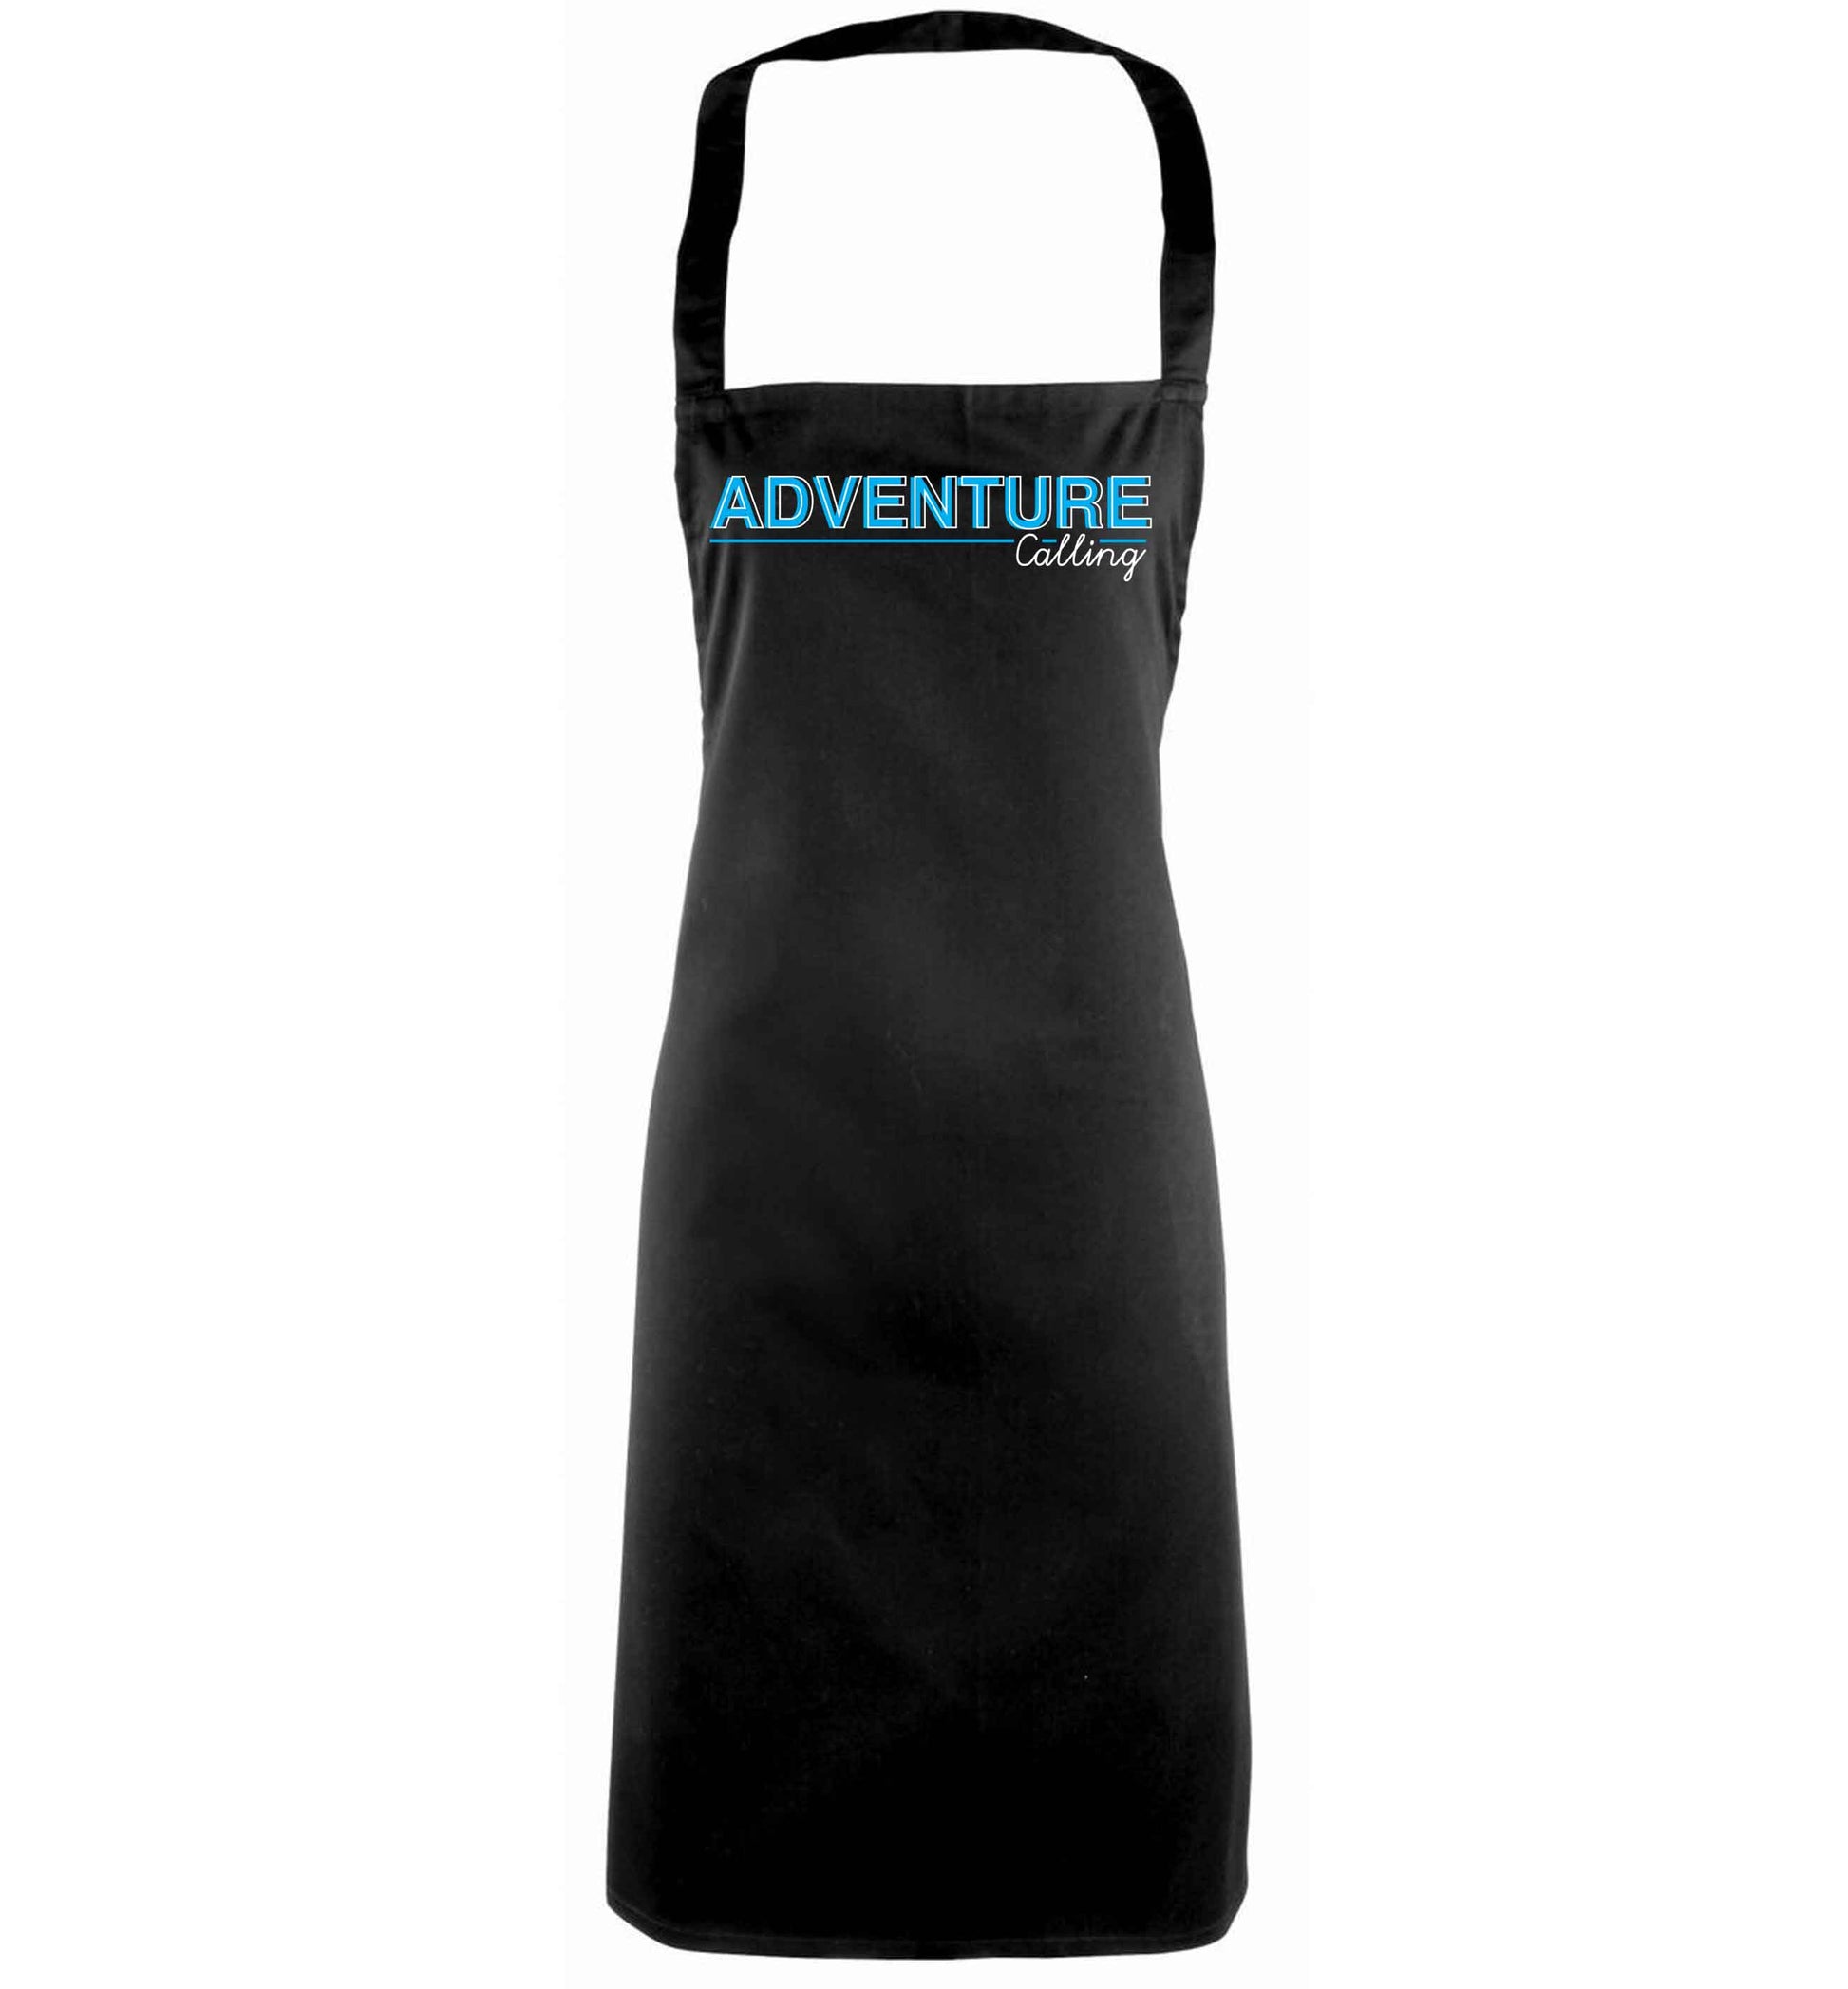 Adventure calling black apron